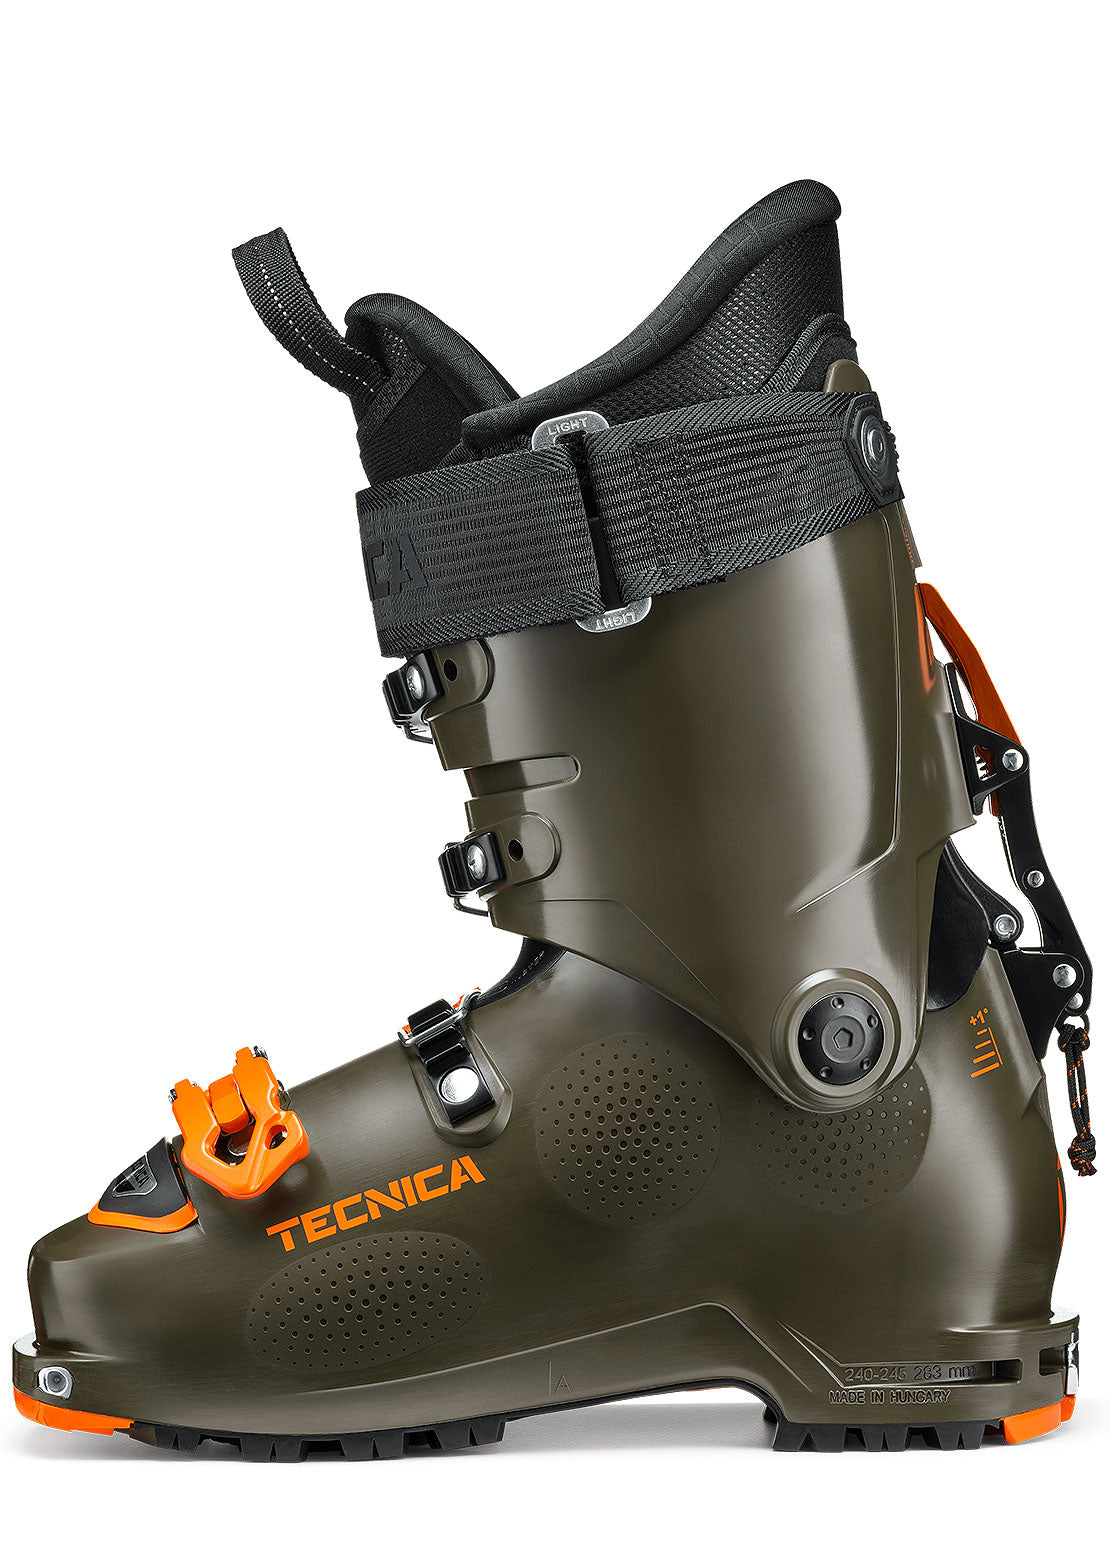 Tecnica Junior Zero G Team Ski Boots Tundra